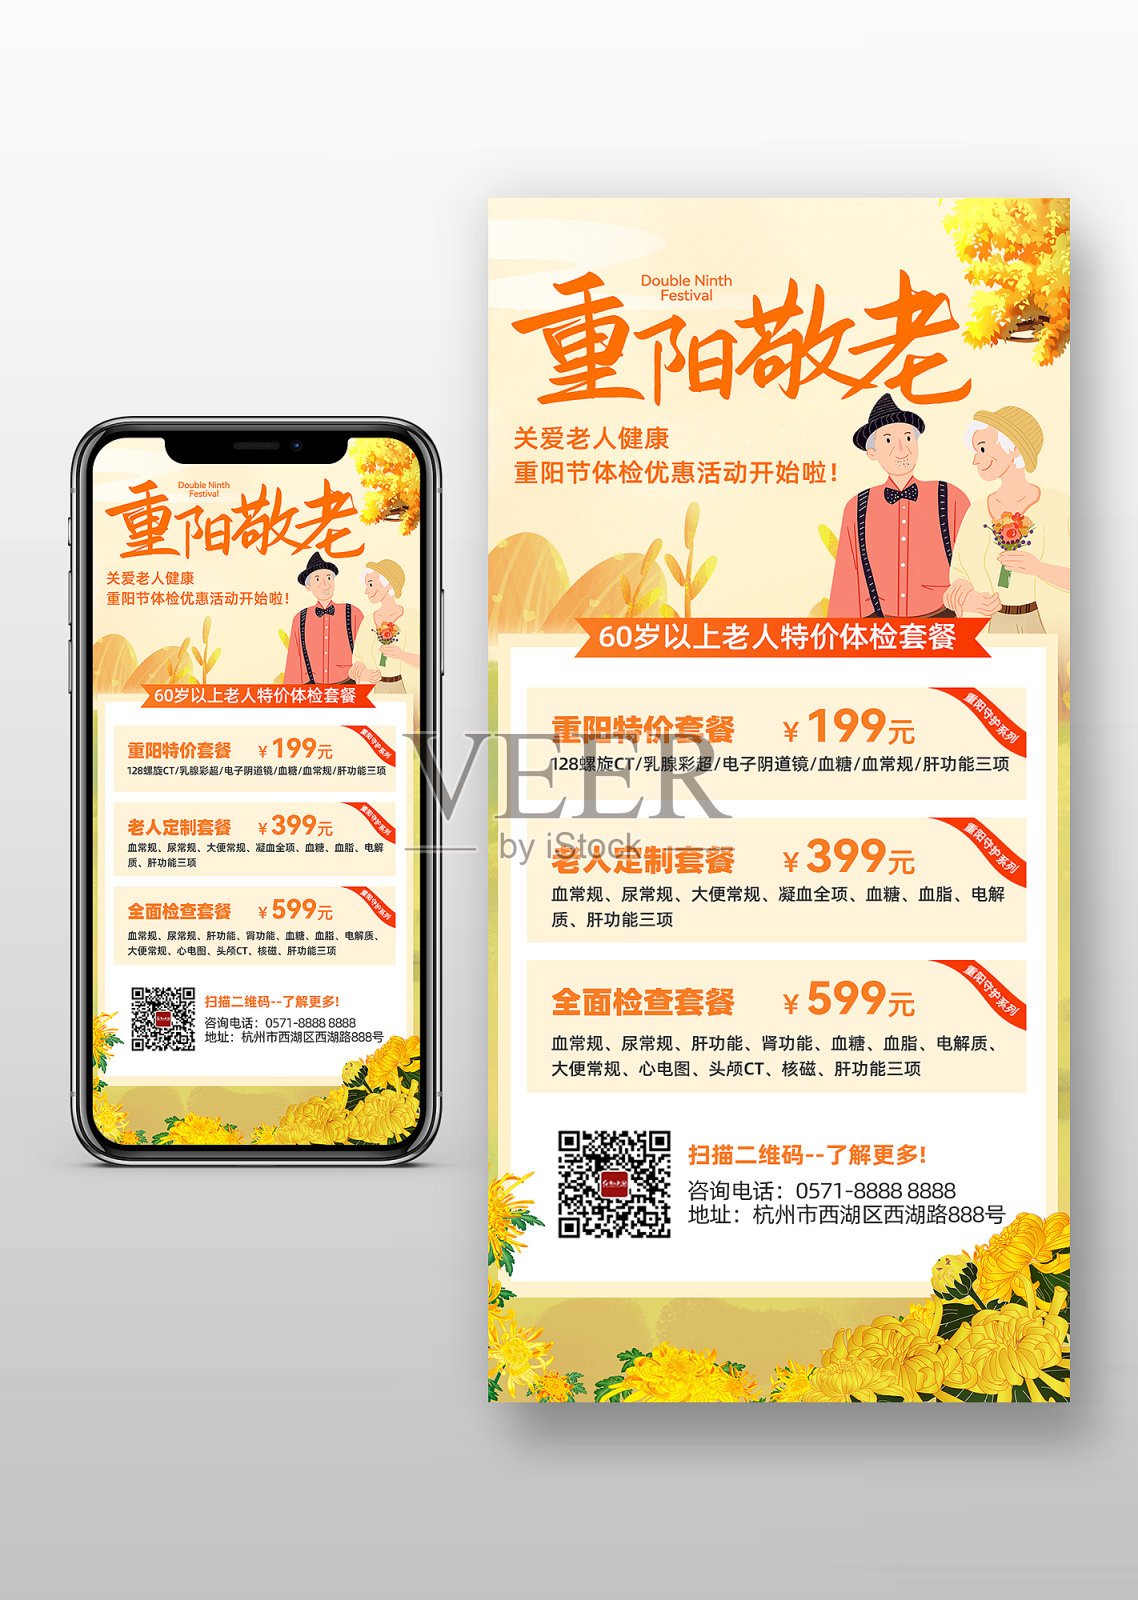 重阳敬老关爱老人健康宣传手机海报设计模板素材